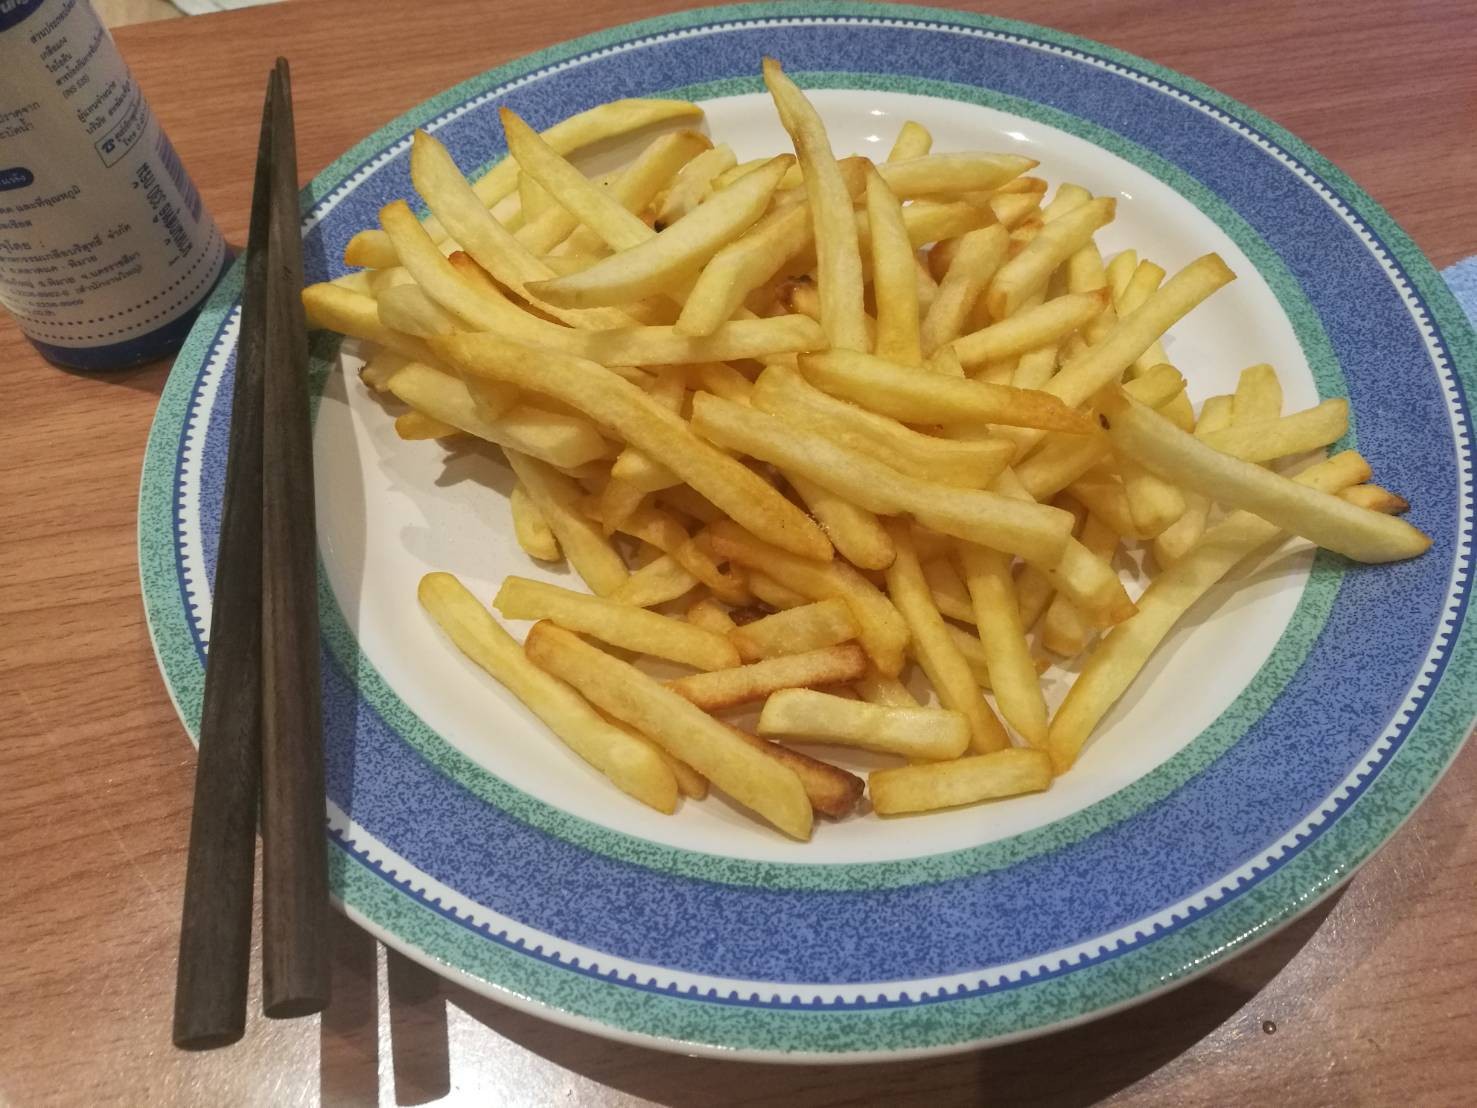 สูตร เฟรนช์ฟรายส์ (French Fries) พร้อมวิธีทำโดย Ilinuiili